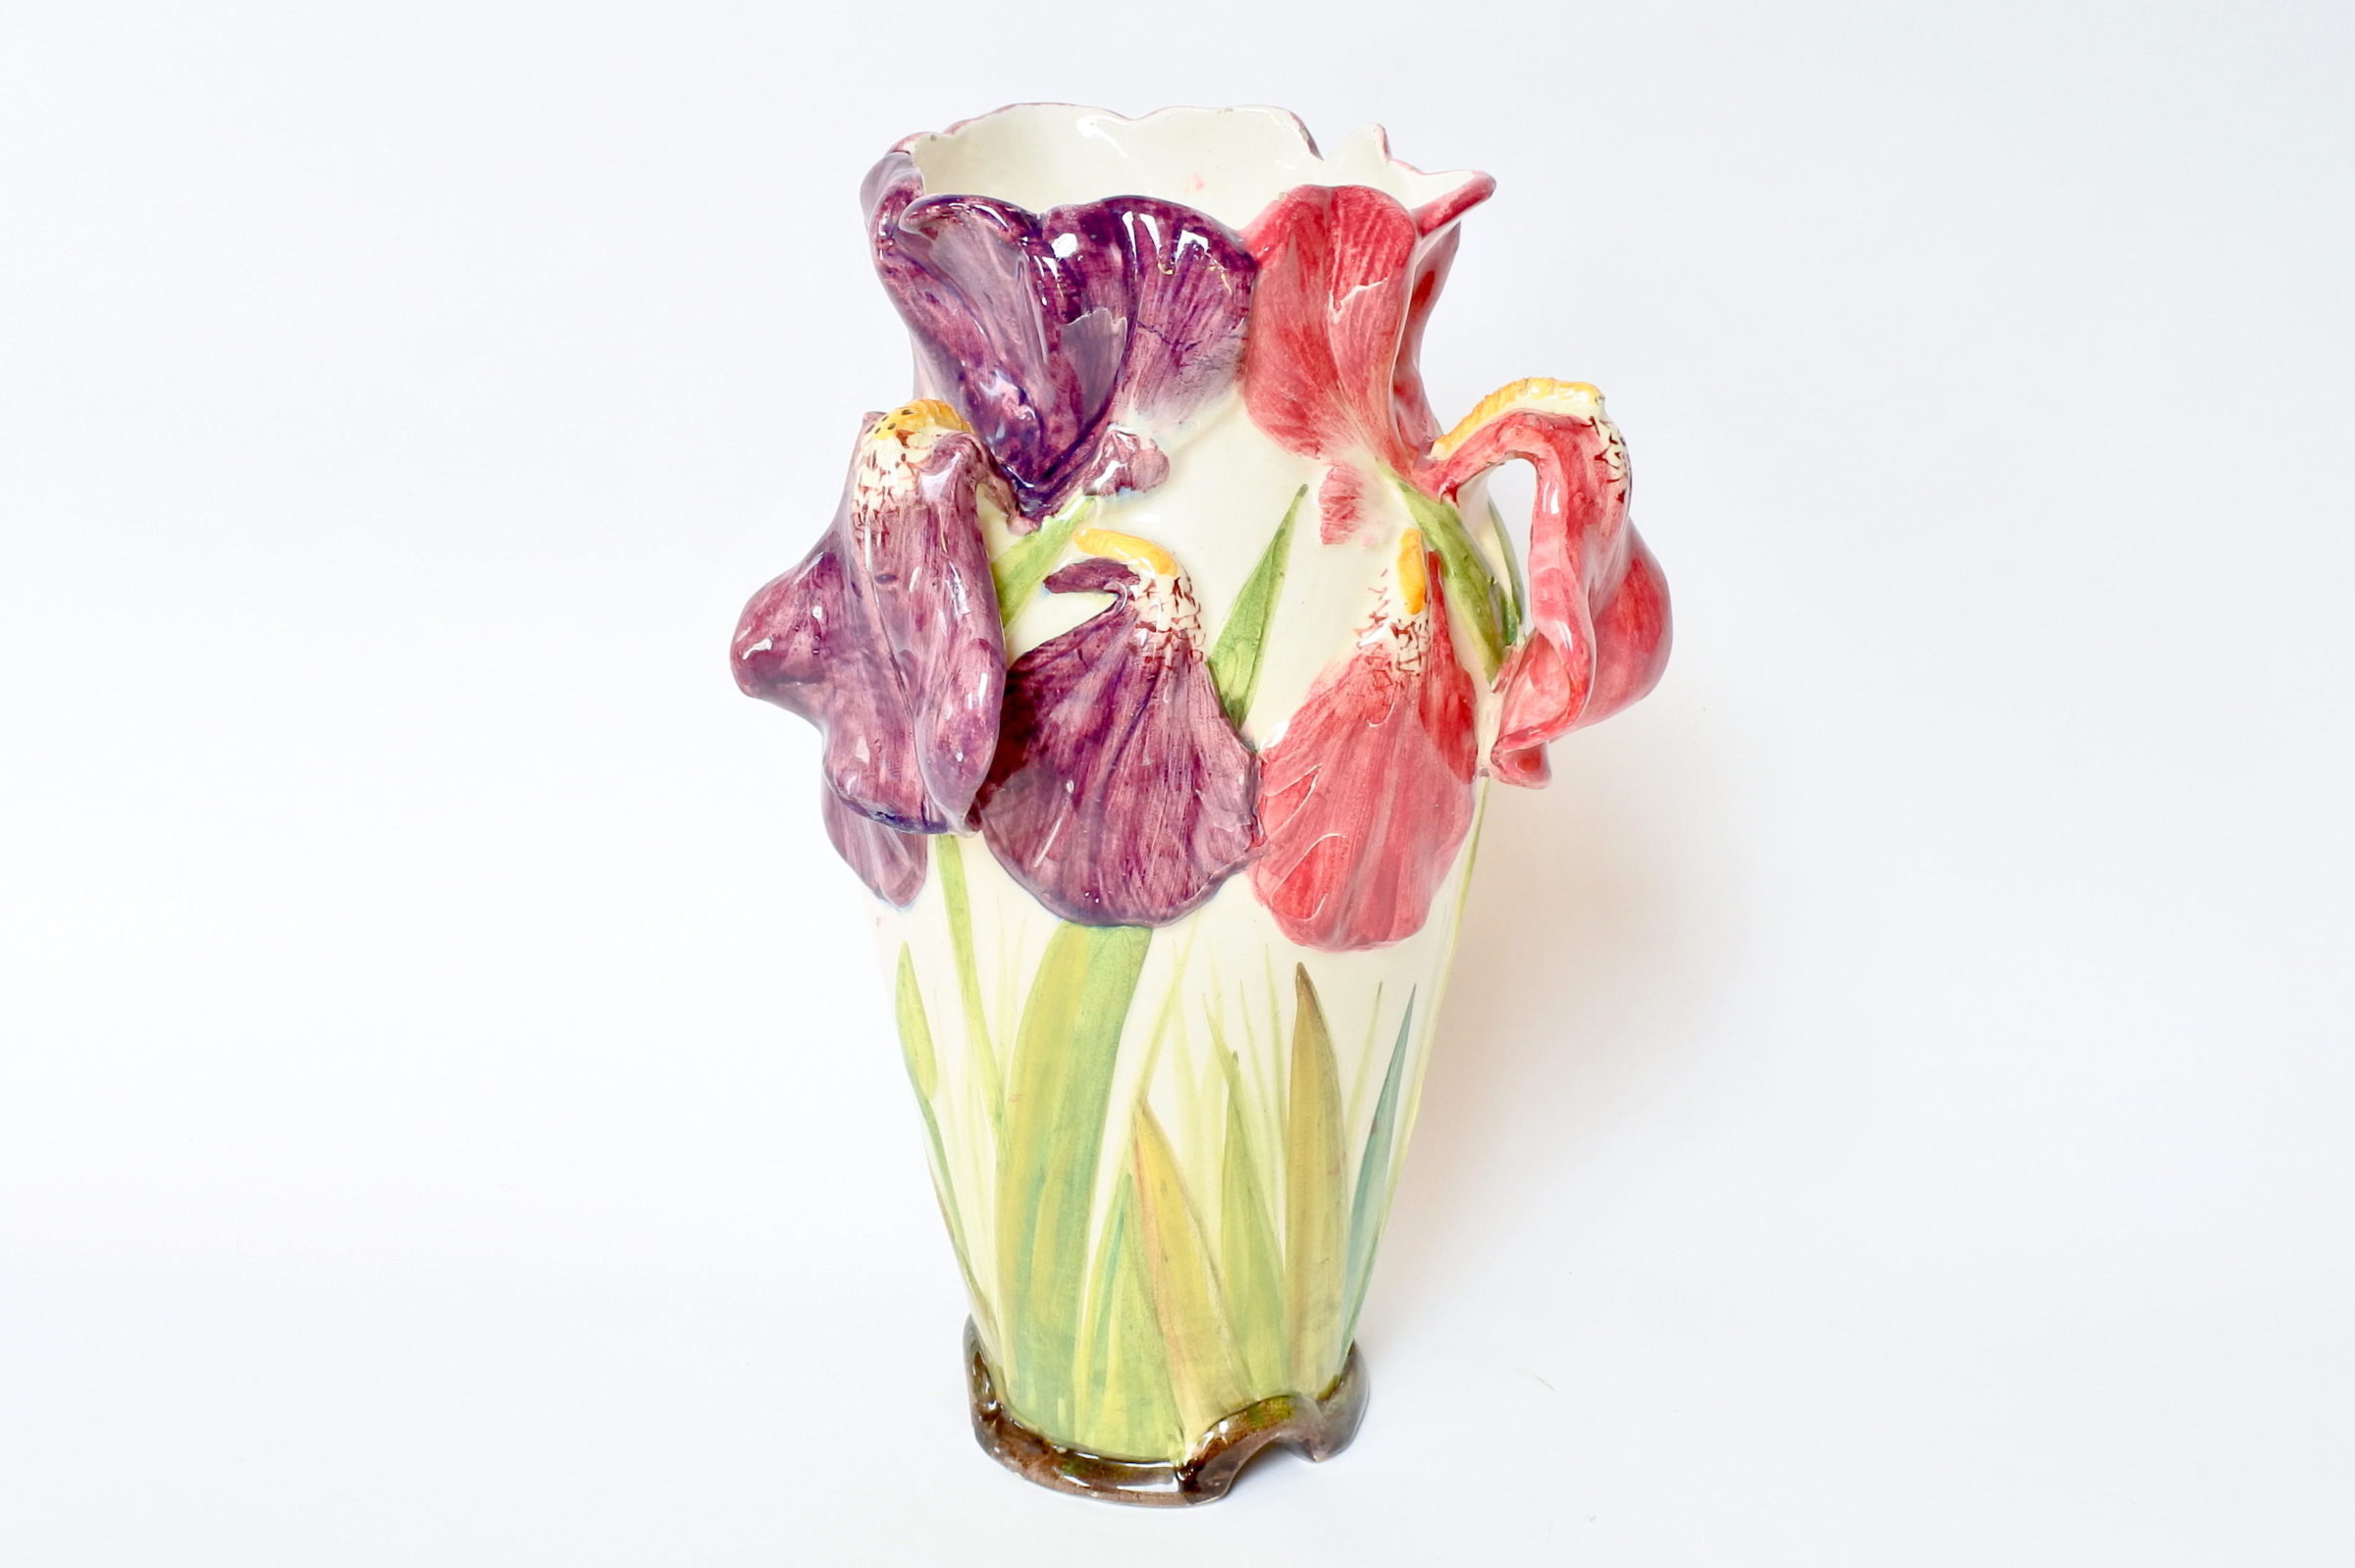 Vaso Massier in ceramica barbotine decorato con tre iris di colori differenti